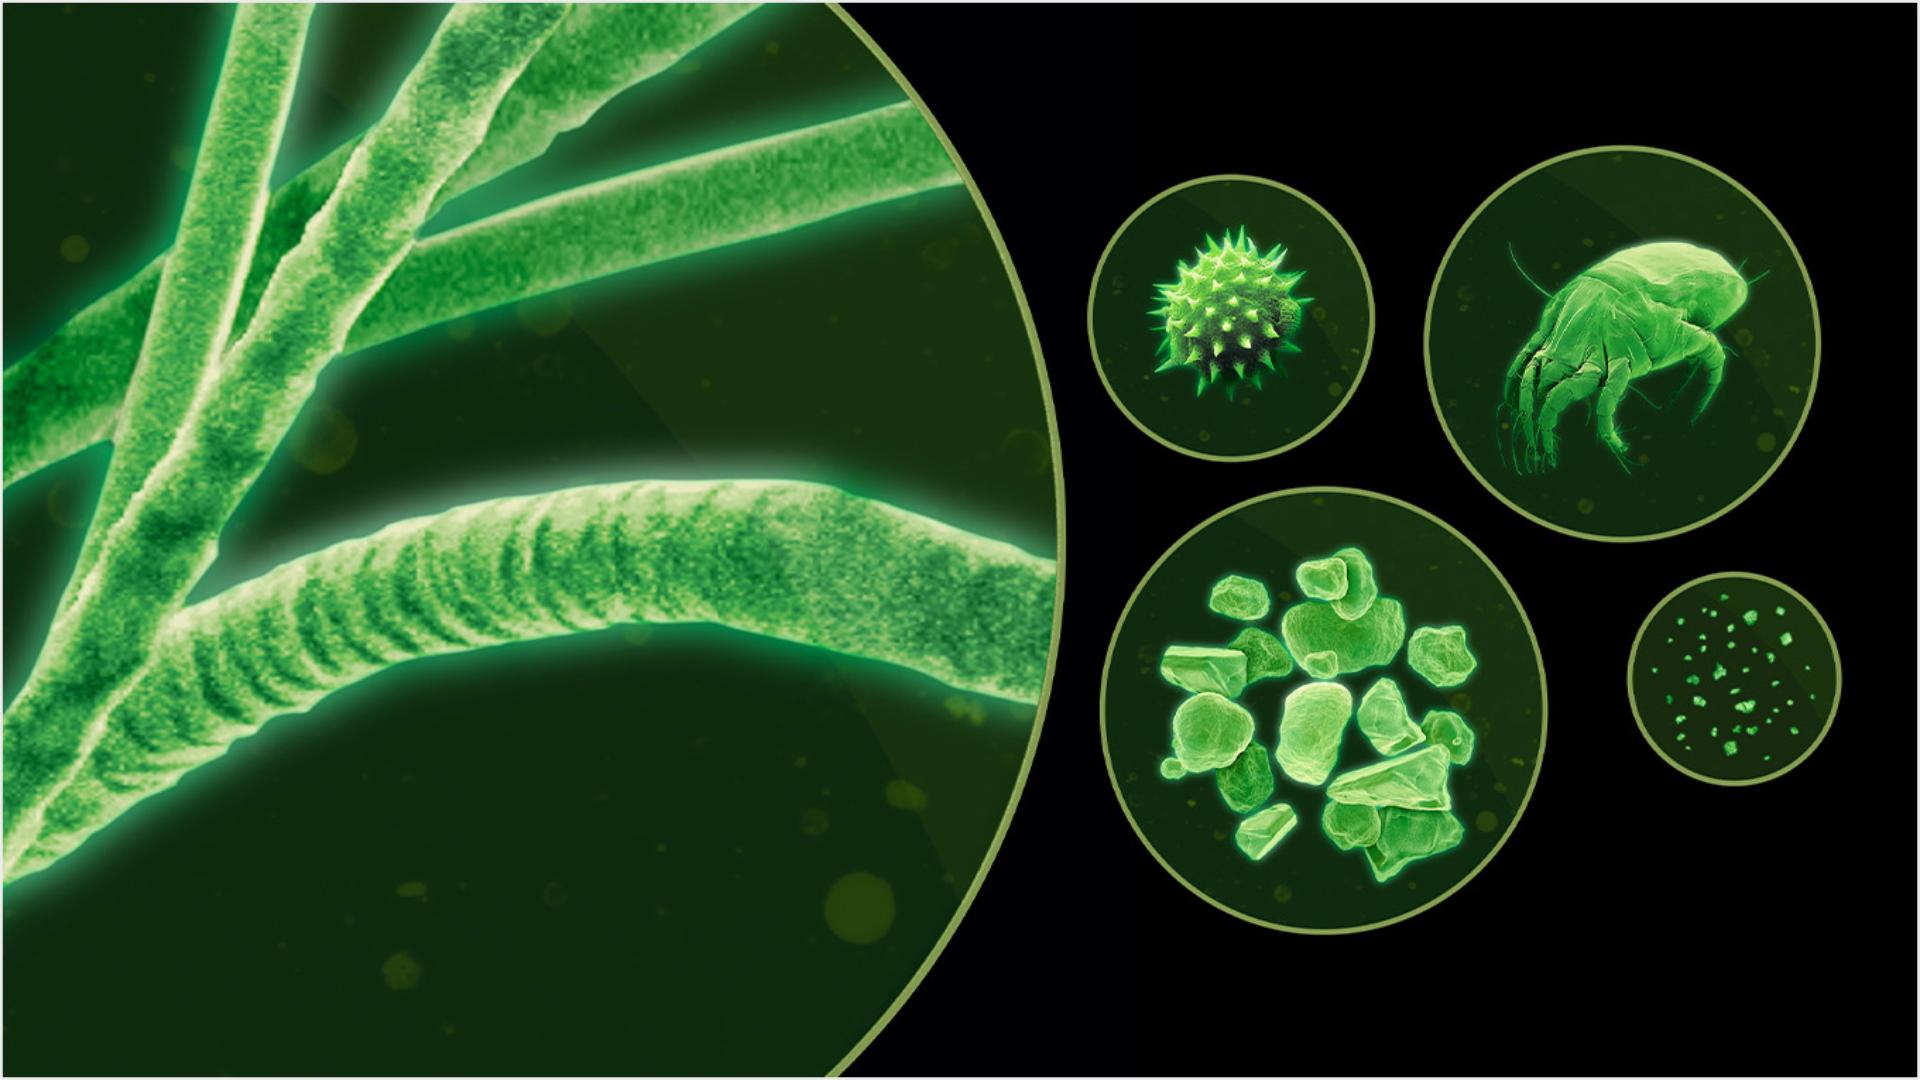 جسيمات دقيقة متنوعة كما تظهر تحت المجهر بلون أخضر.